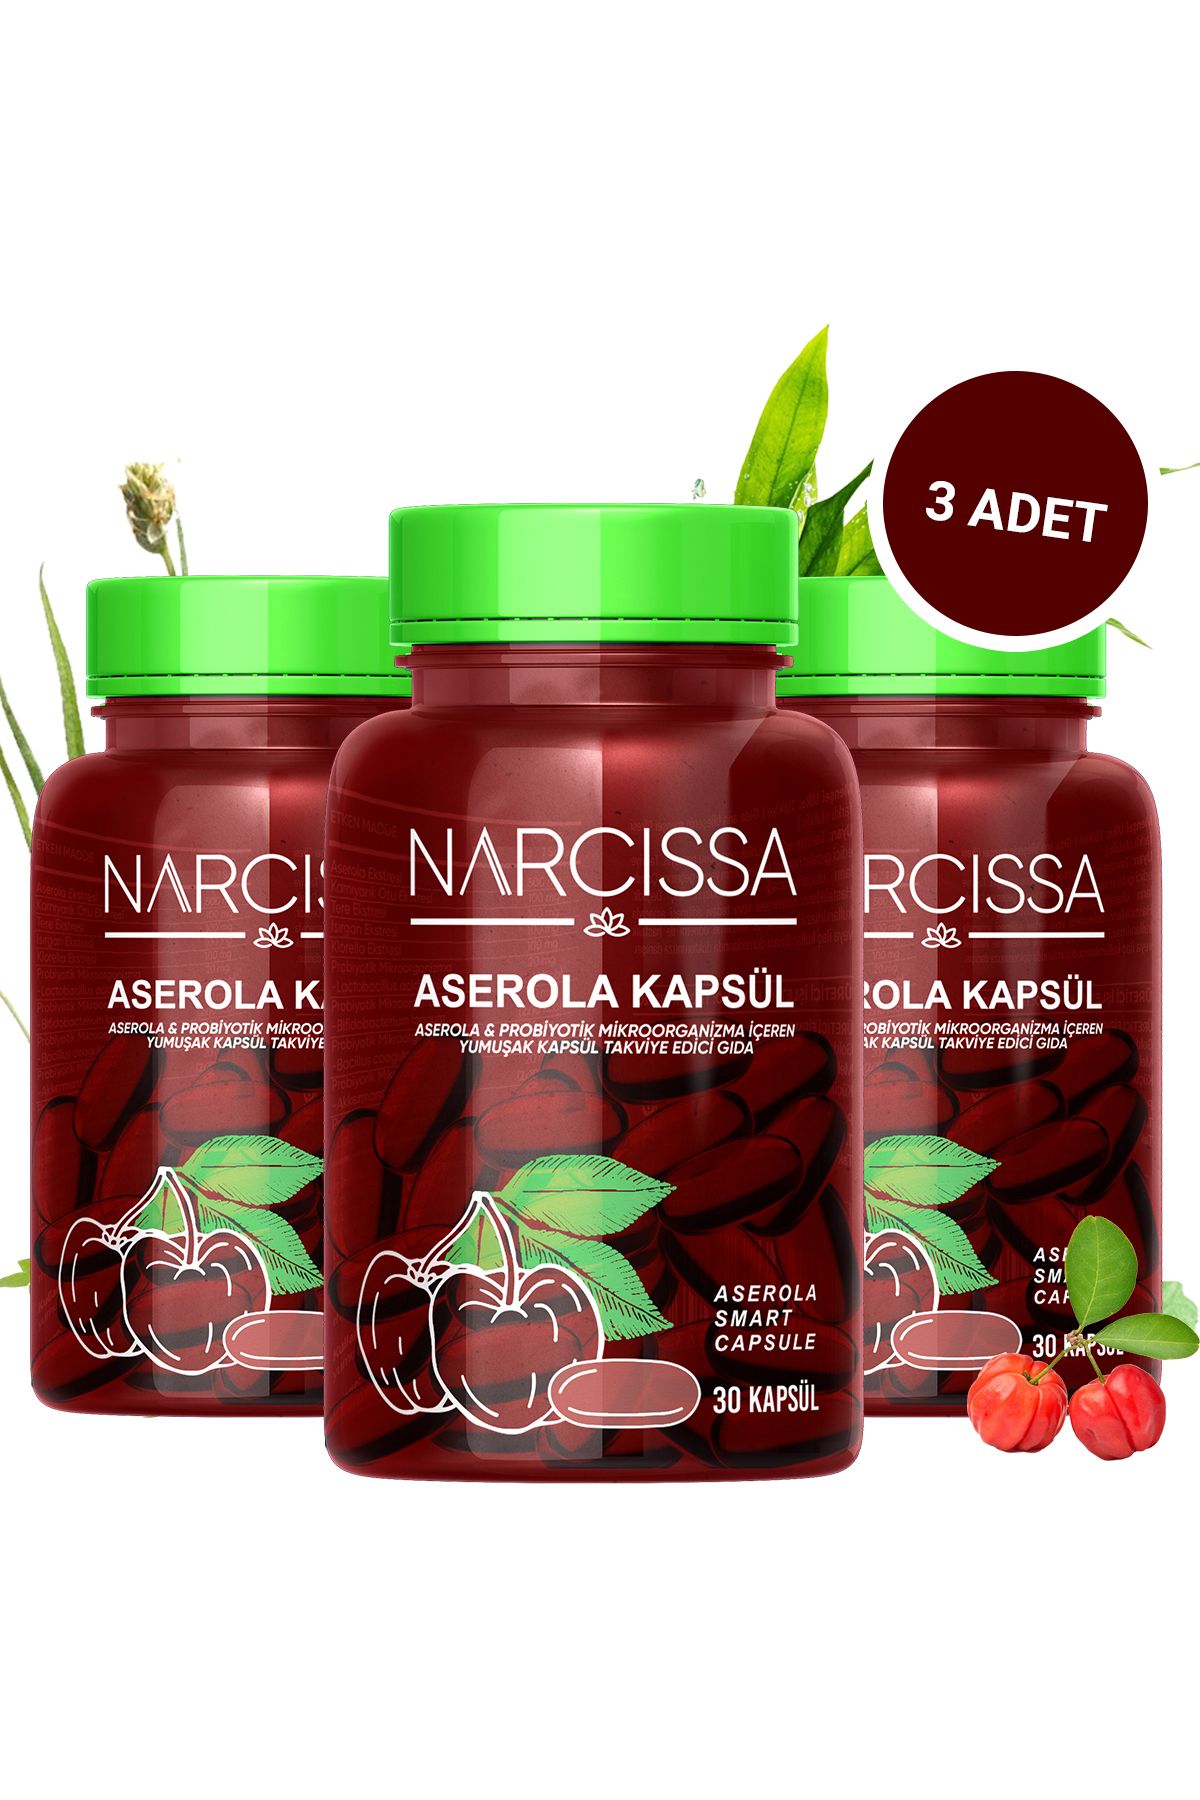 Narcissa 3 Adet - Aserola Kapsulü & Probiyotik Mikroorganizma İçeren Detox Kapsülü